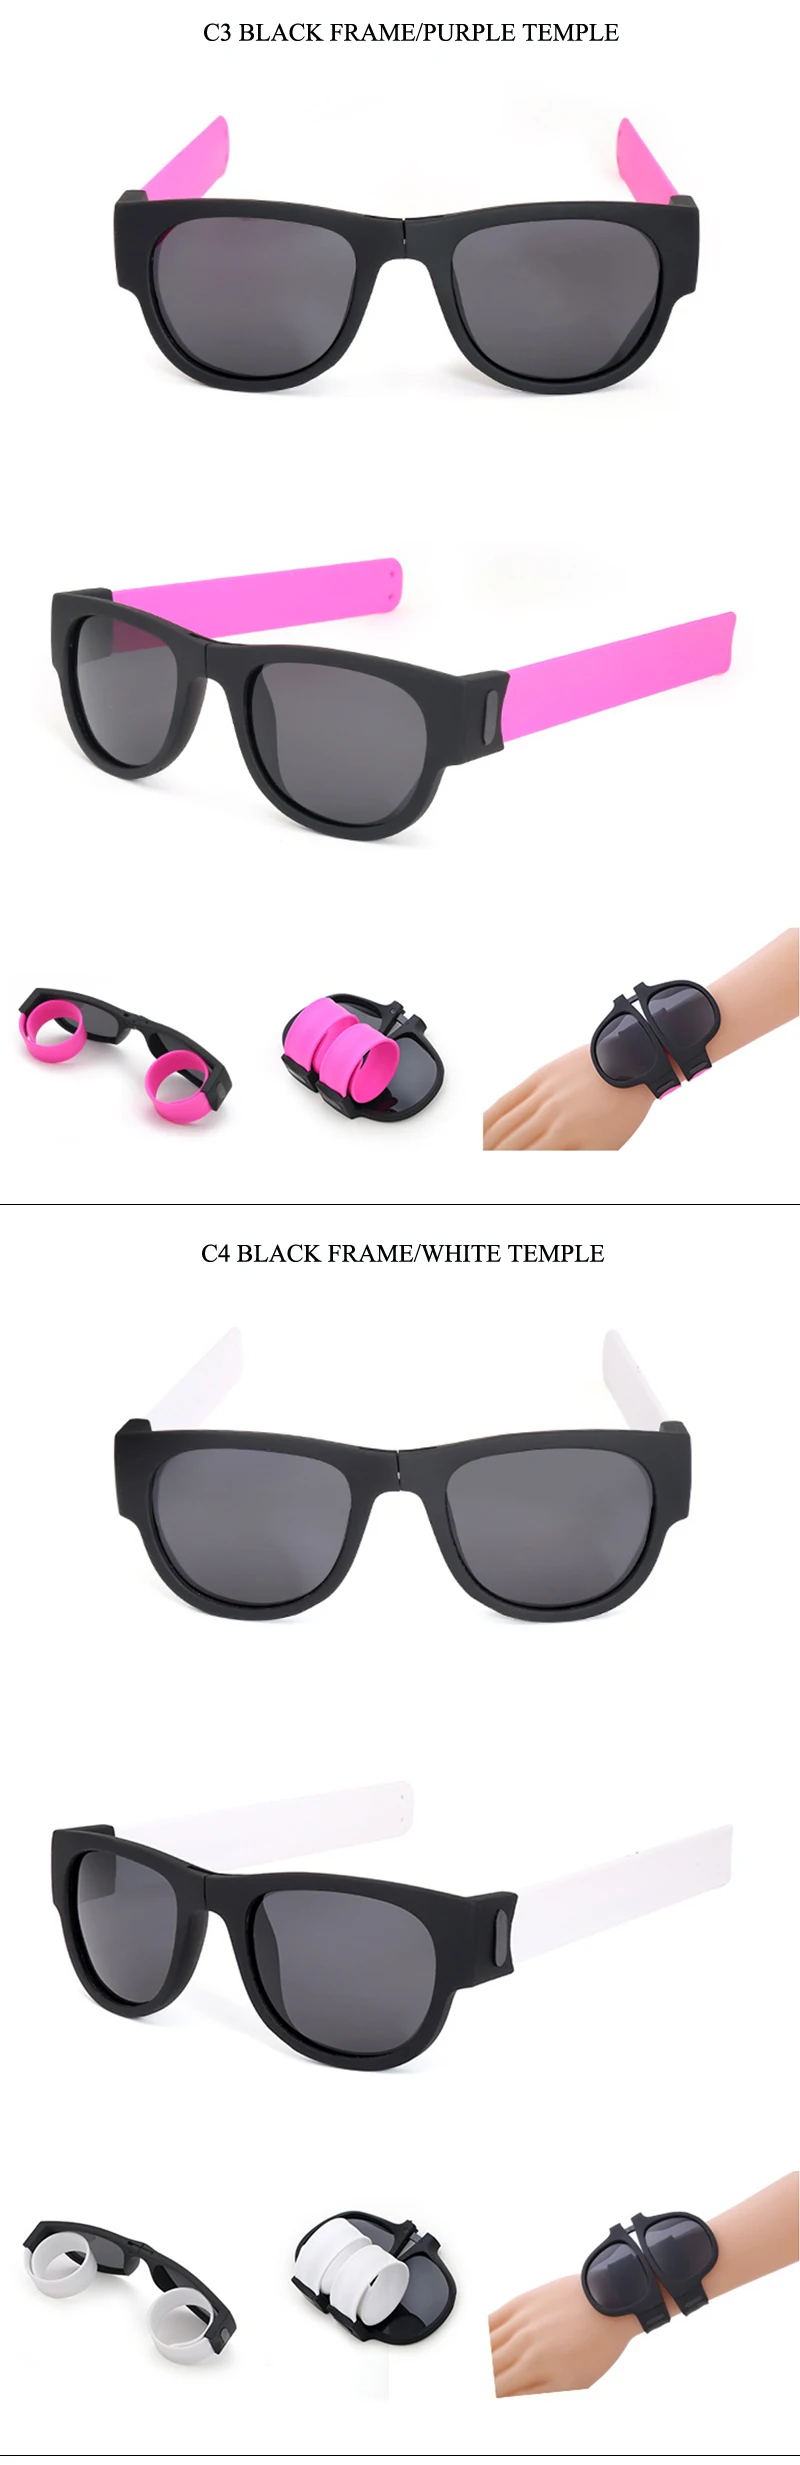 Складываемый браслет для женщин и мужчин, солнцезащитные очки, складные унисекс, поляризованные солнцезащитные очки, портативные пляжные солнцезащитные очки